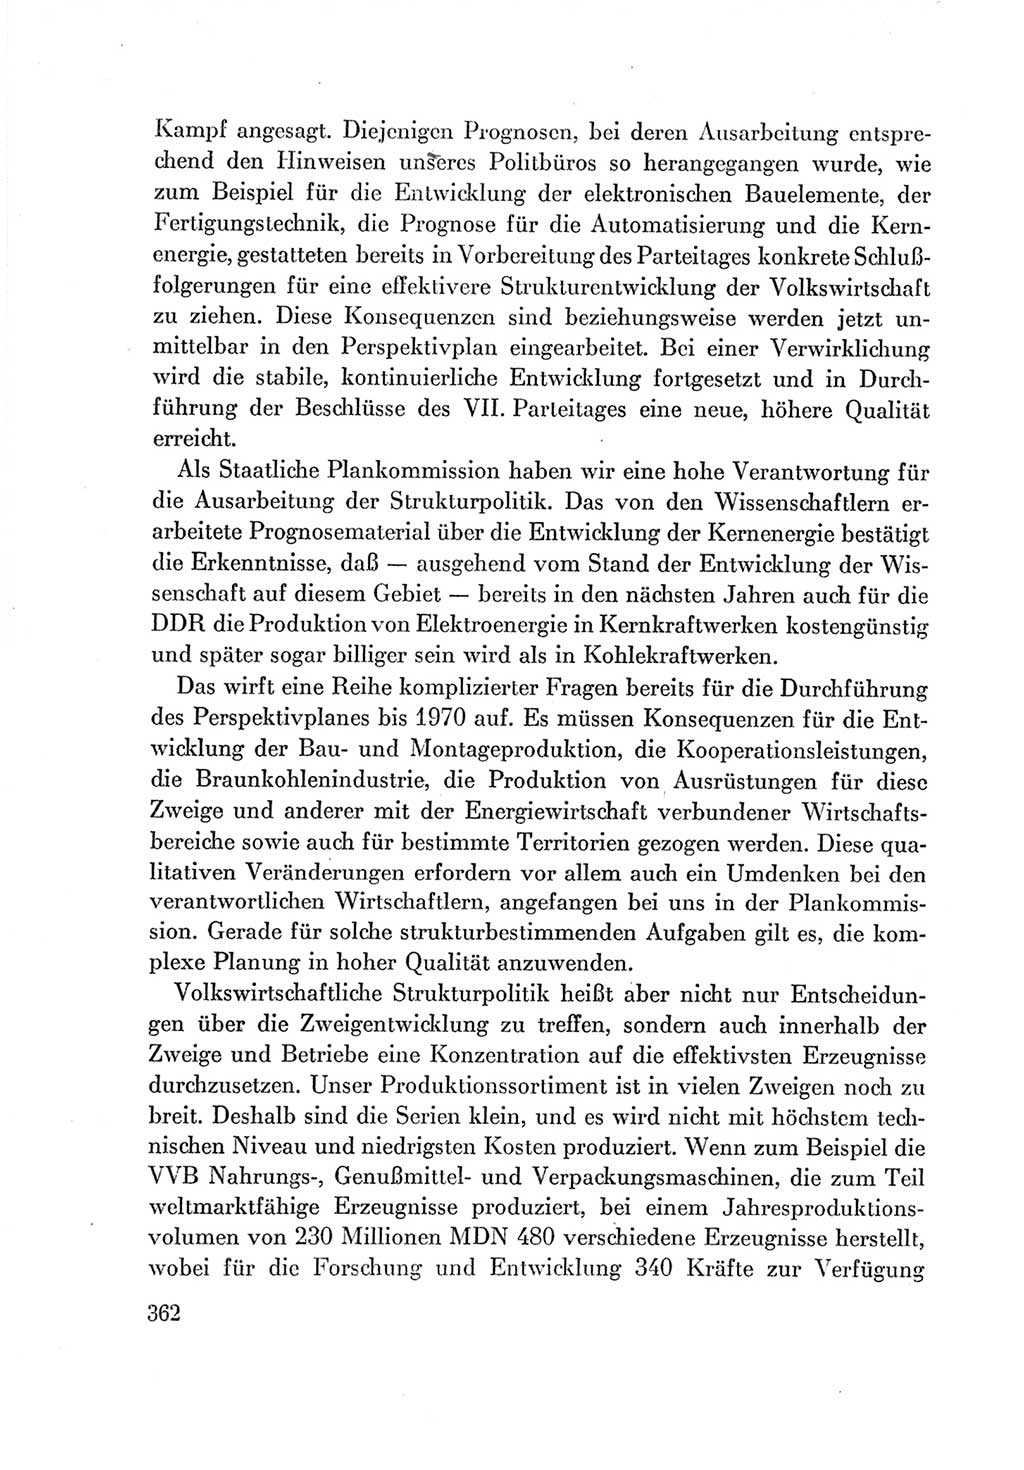 Protokoll der Verhandlungen des Ⅶ. Parteitages der Sozialistischen Einheitspartei Deutschlands (SED) [Deutsche Demokratische Republik (DDR)] 1967, Band Ⅰ, Seite 362 (Prot. Verh. Ⅶ. PT SED DDR 1967, Bd. Ⅰ, S. 362)